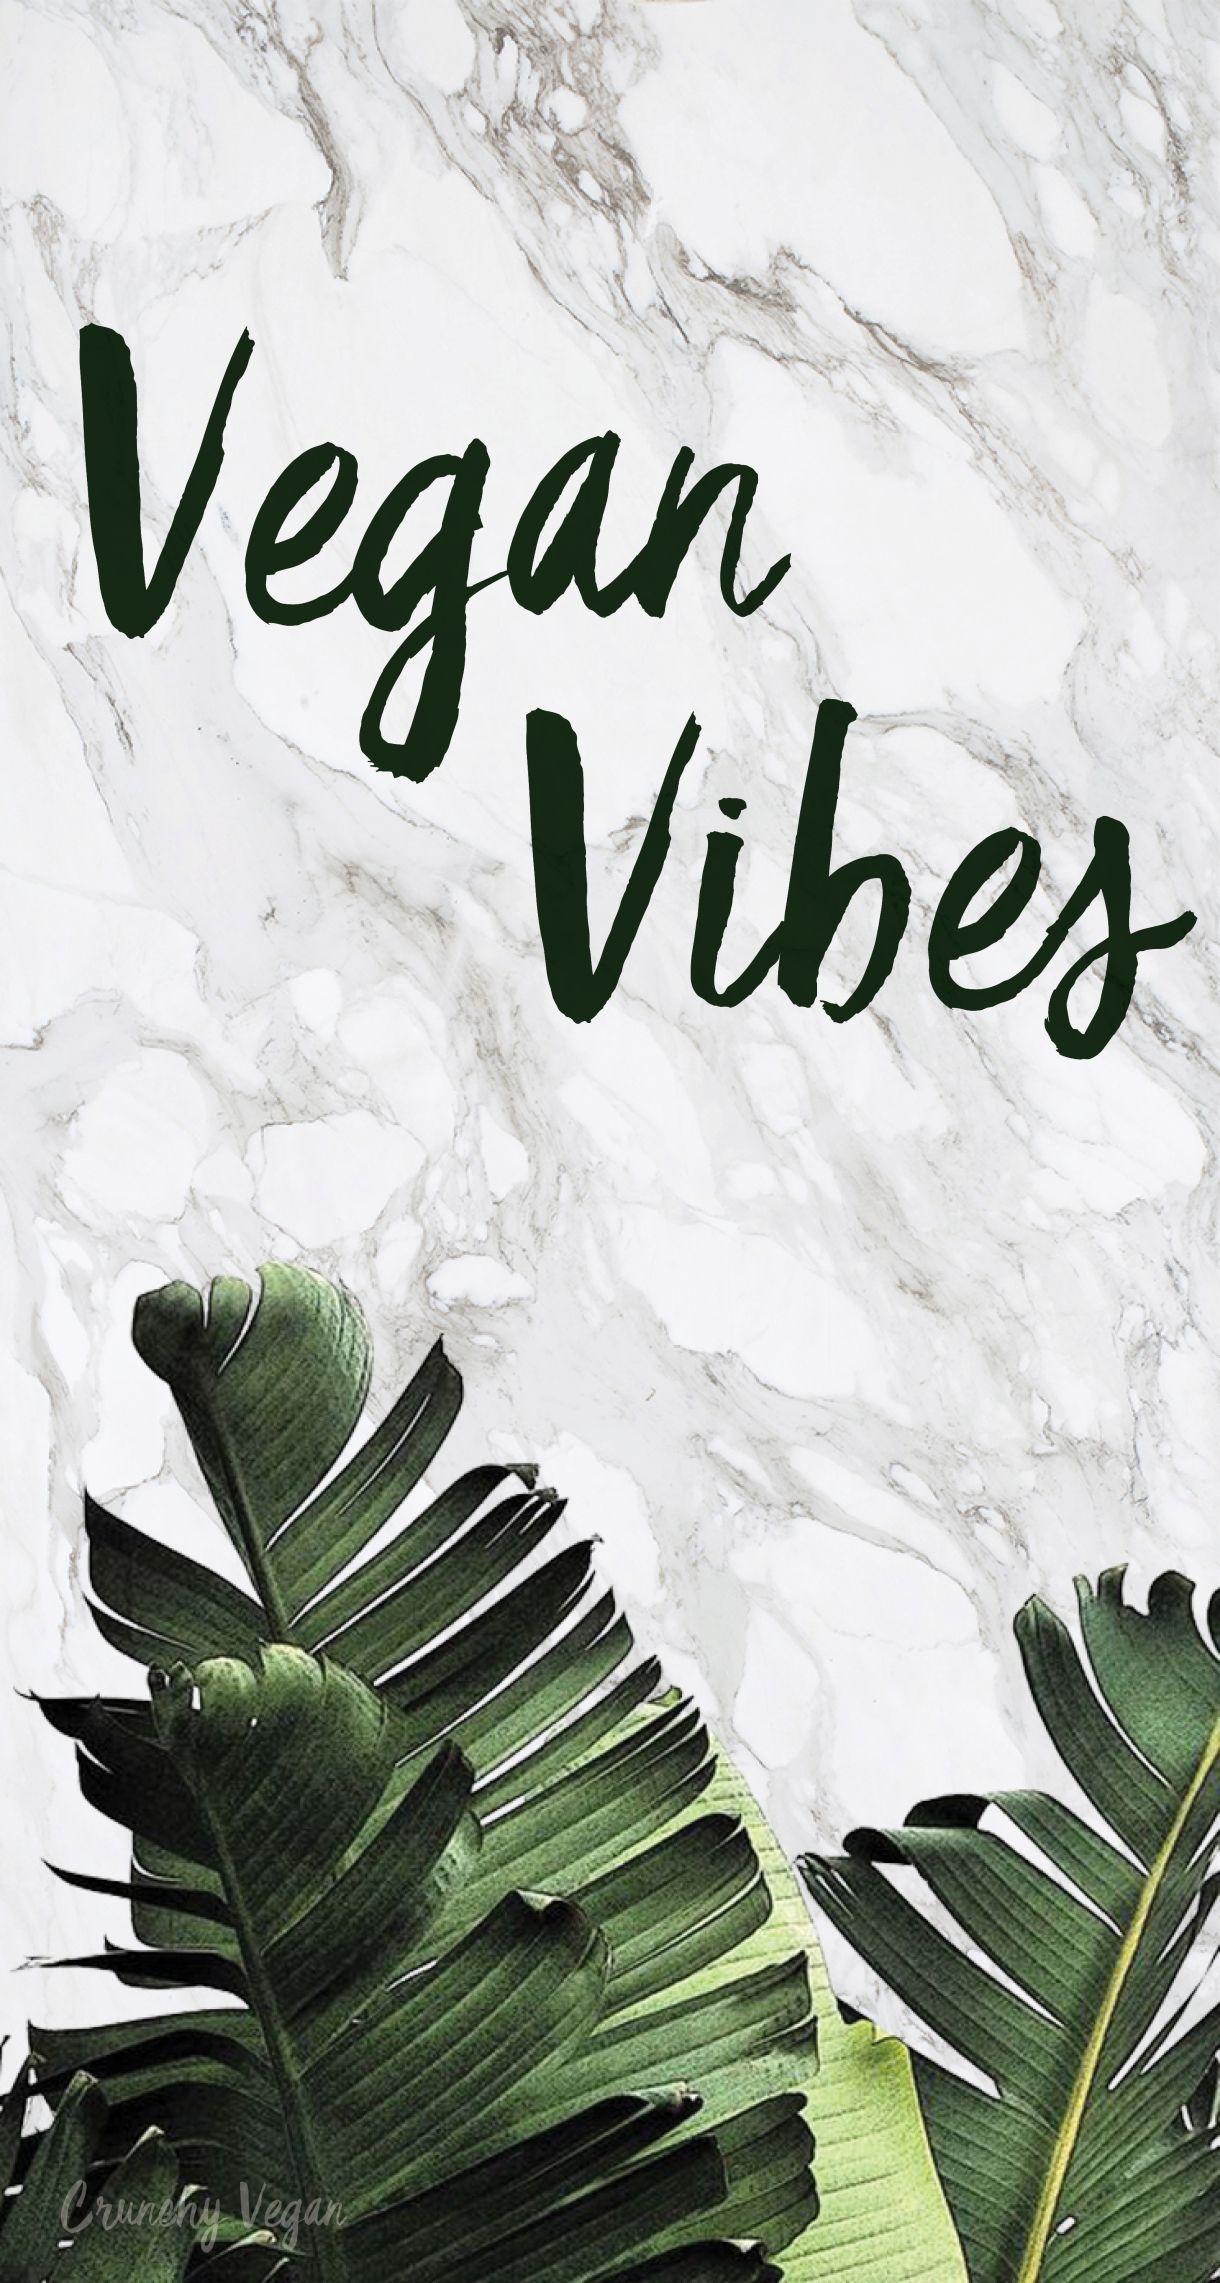 Vegan vibes phone wallpaper from Crunchy Vegan. Vegan